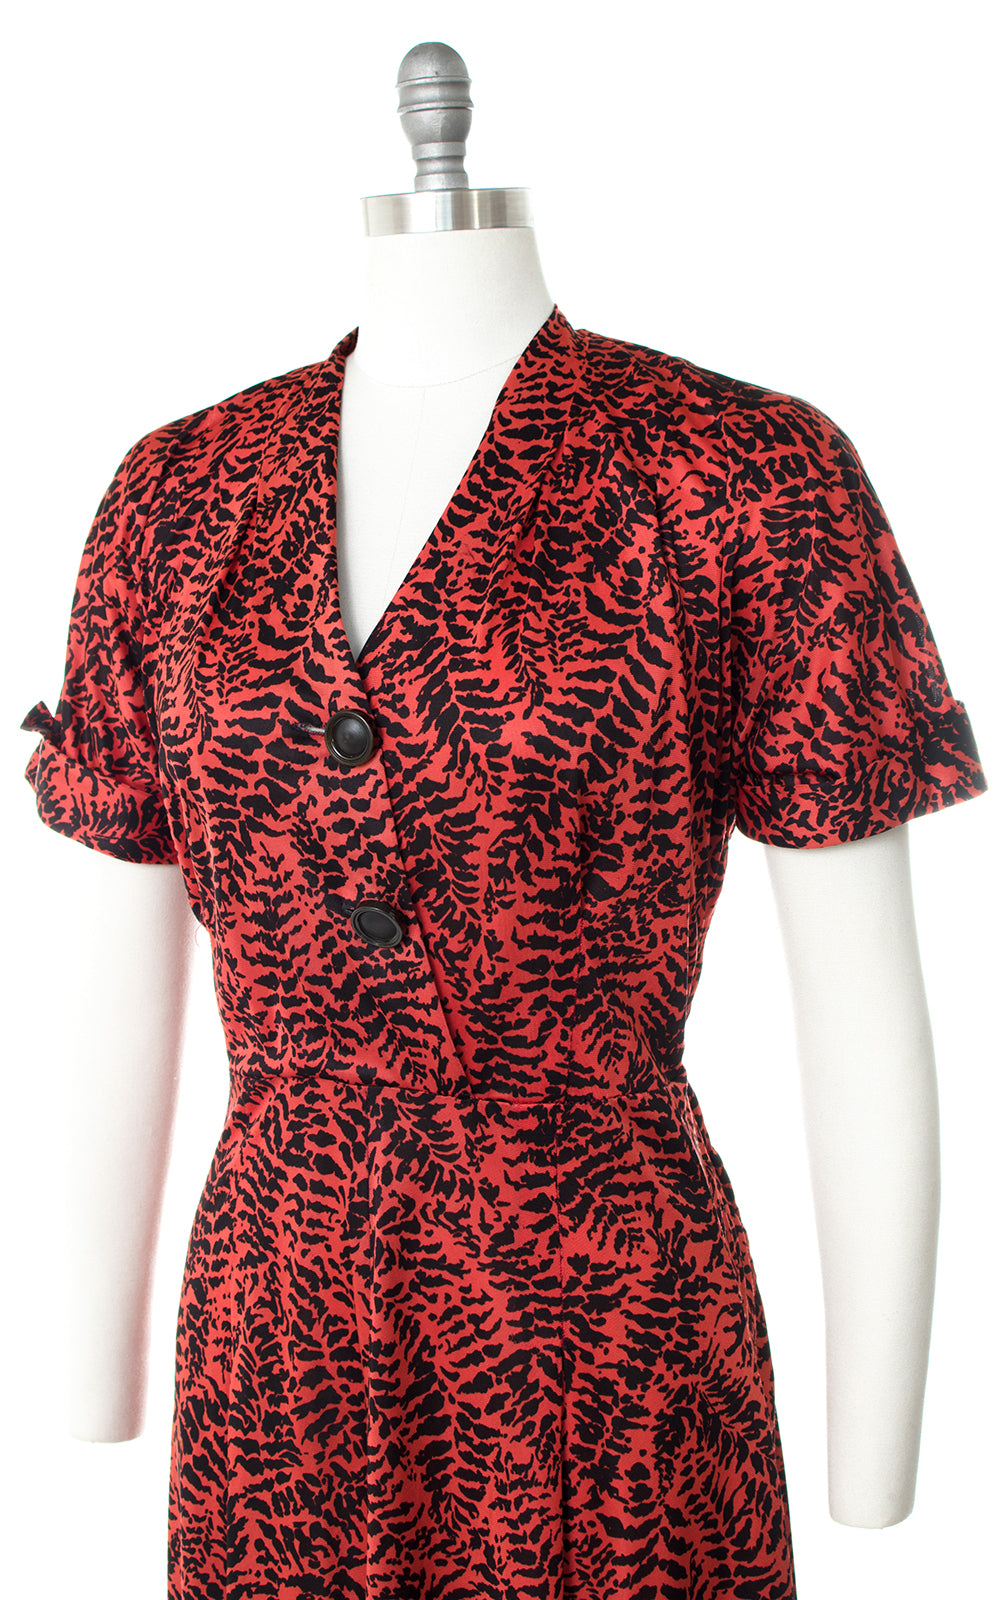 1940s Fern Printed Rayon Jersey Shirt Dress